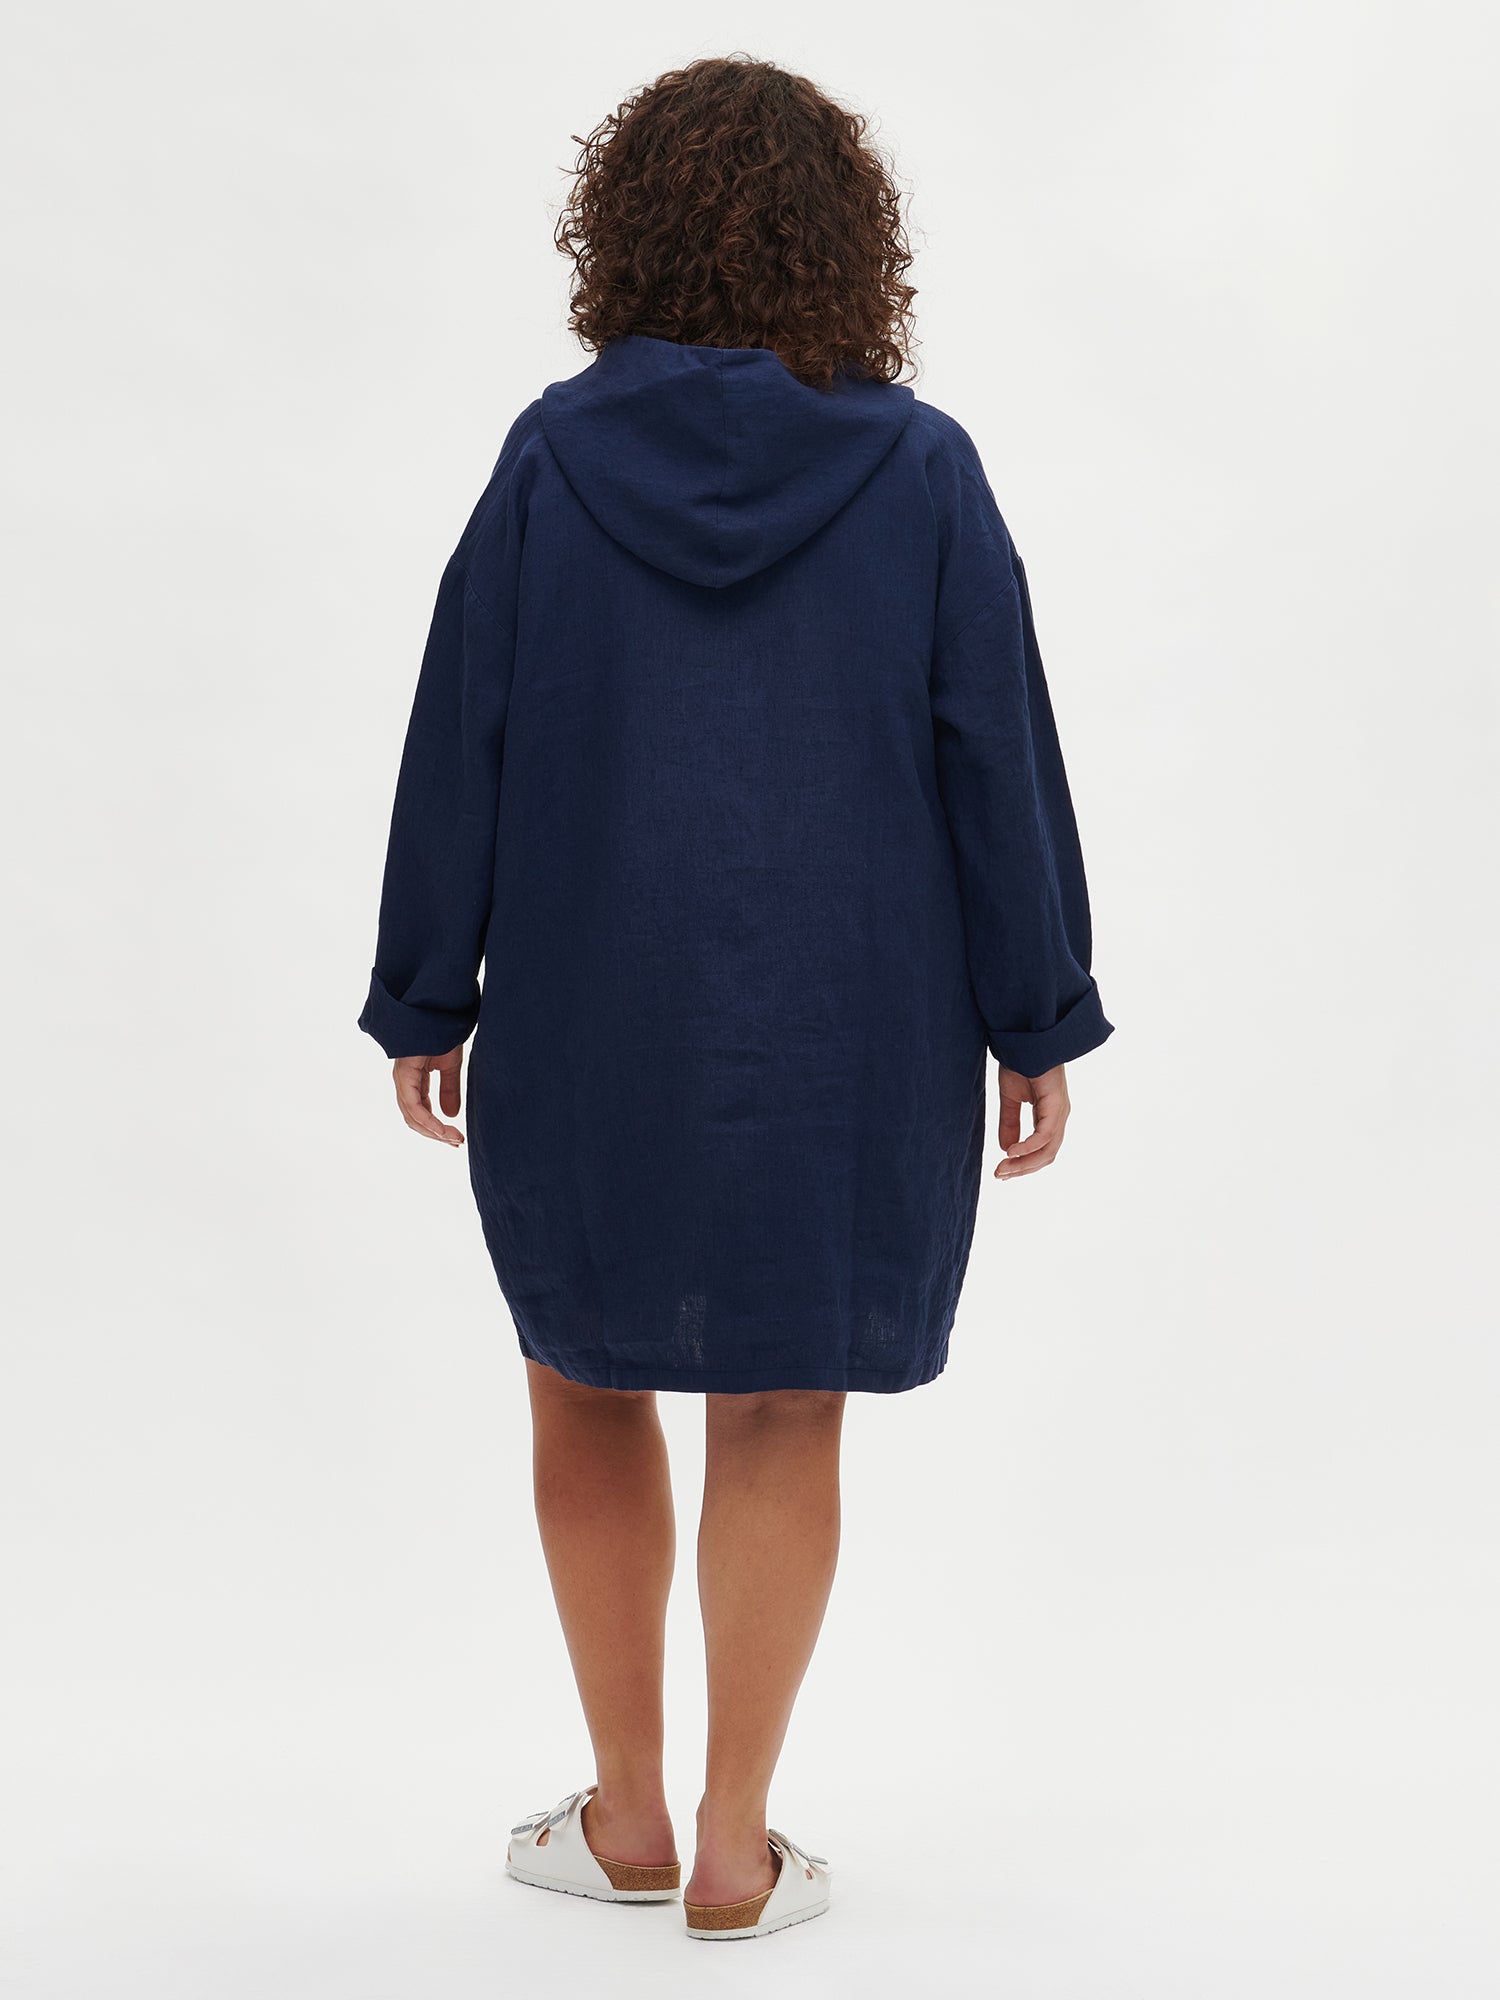 Nanson naisten rento tummansininen Sarastus-pellavahupparimekko pitkillä hihoilla koossa XL mallin päällä takaa.